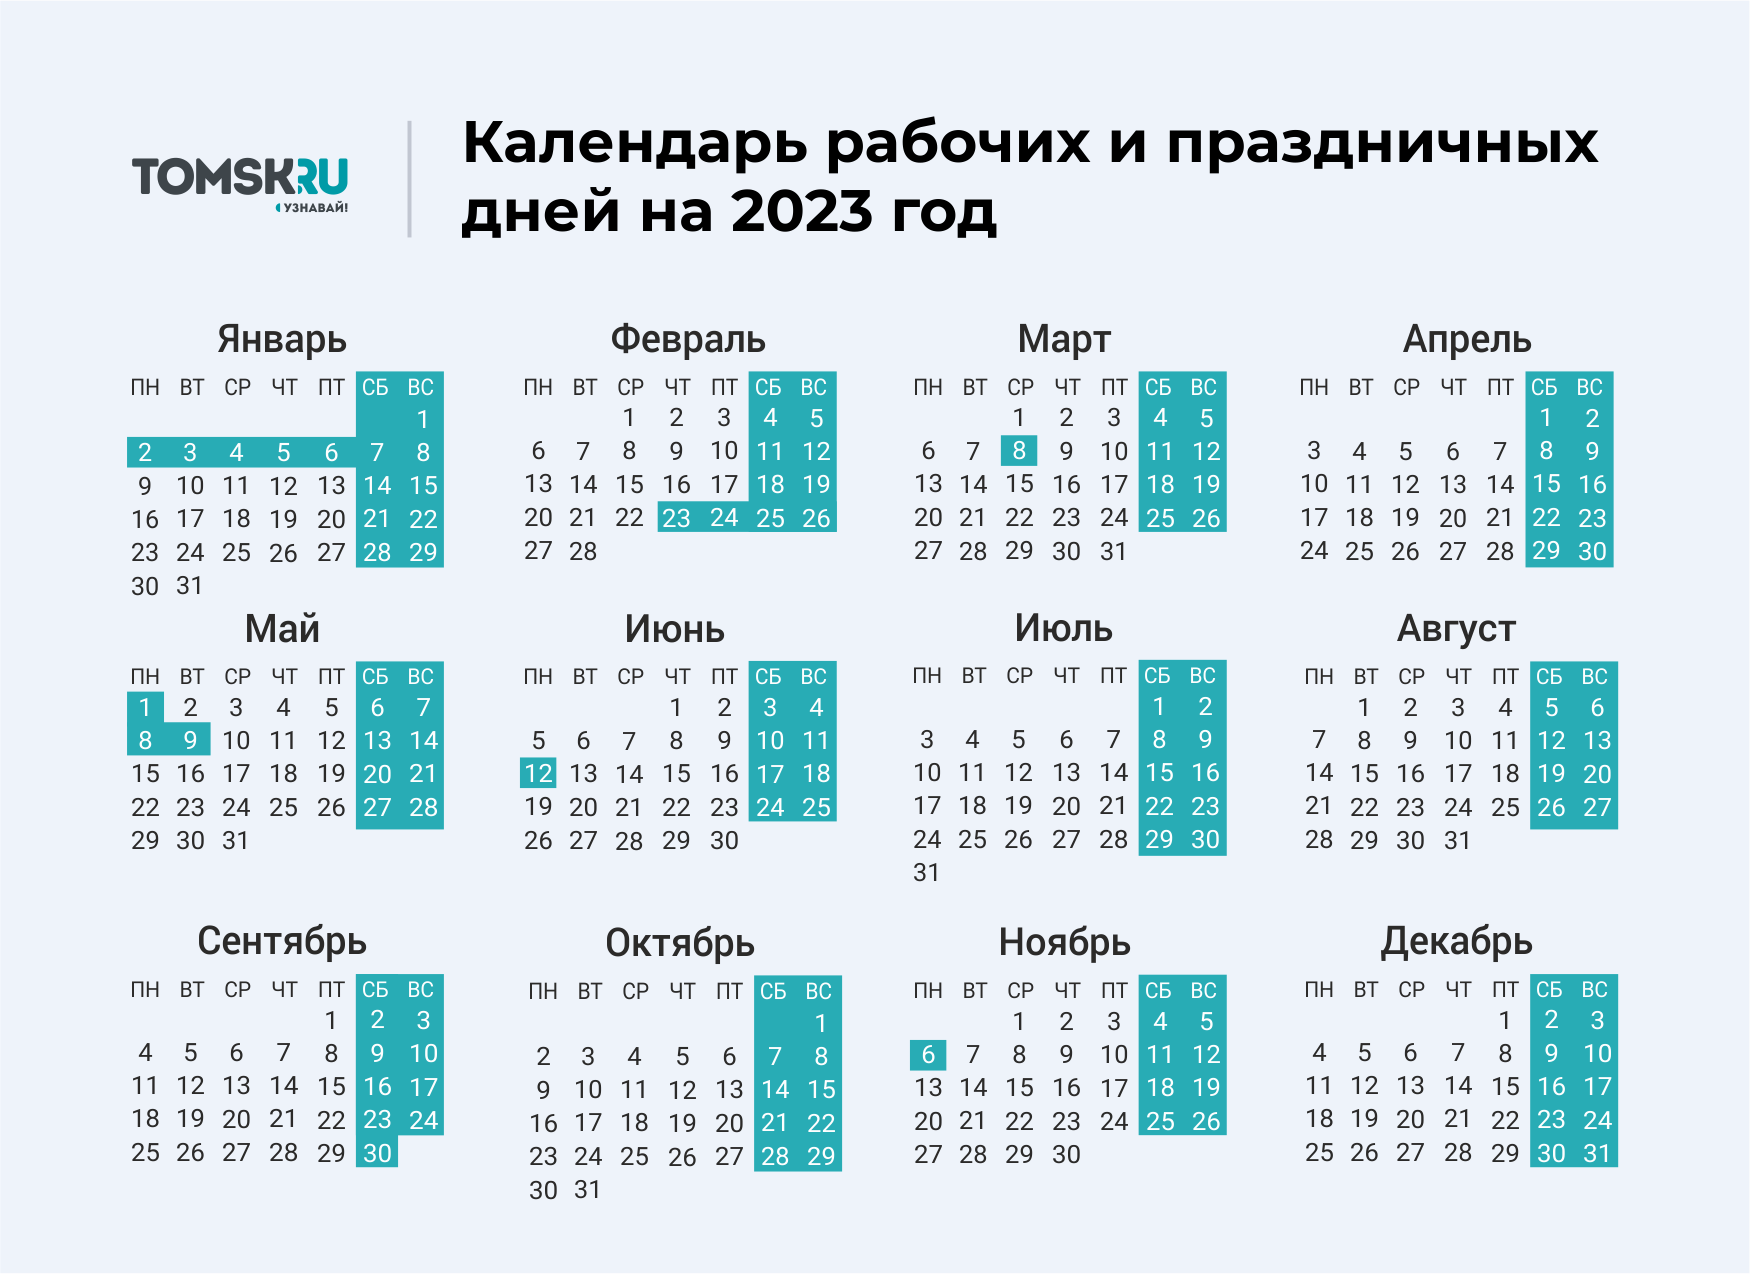 1 апреля 2024 выходной или рабочий день. Выходные дни в 2023 году в России календарь. Календарь выходных и праздничных дней на 2023 год в России. Календарь праздничных выходеыхв 2023 году. Календарь на 2023 год с праздниками и выходными выходные снизу.